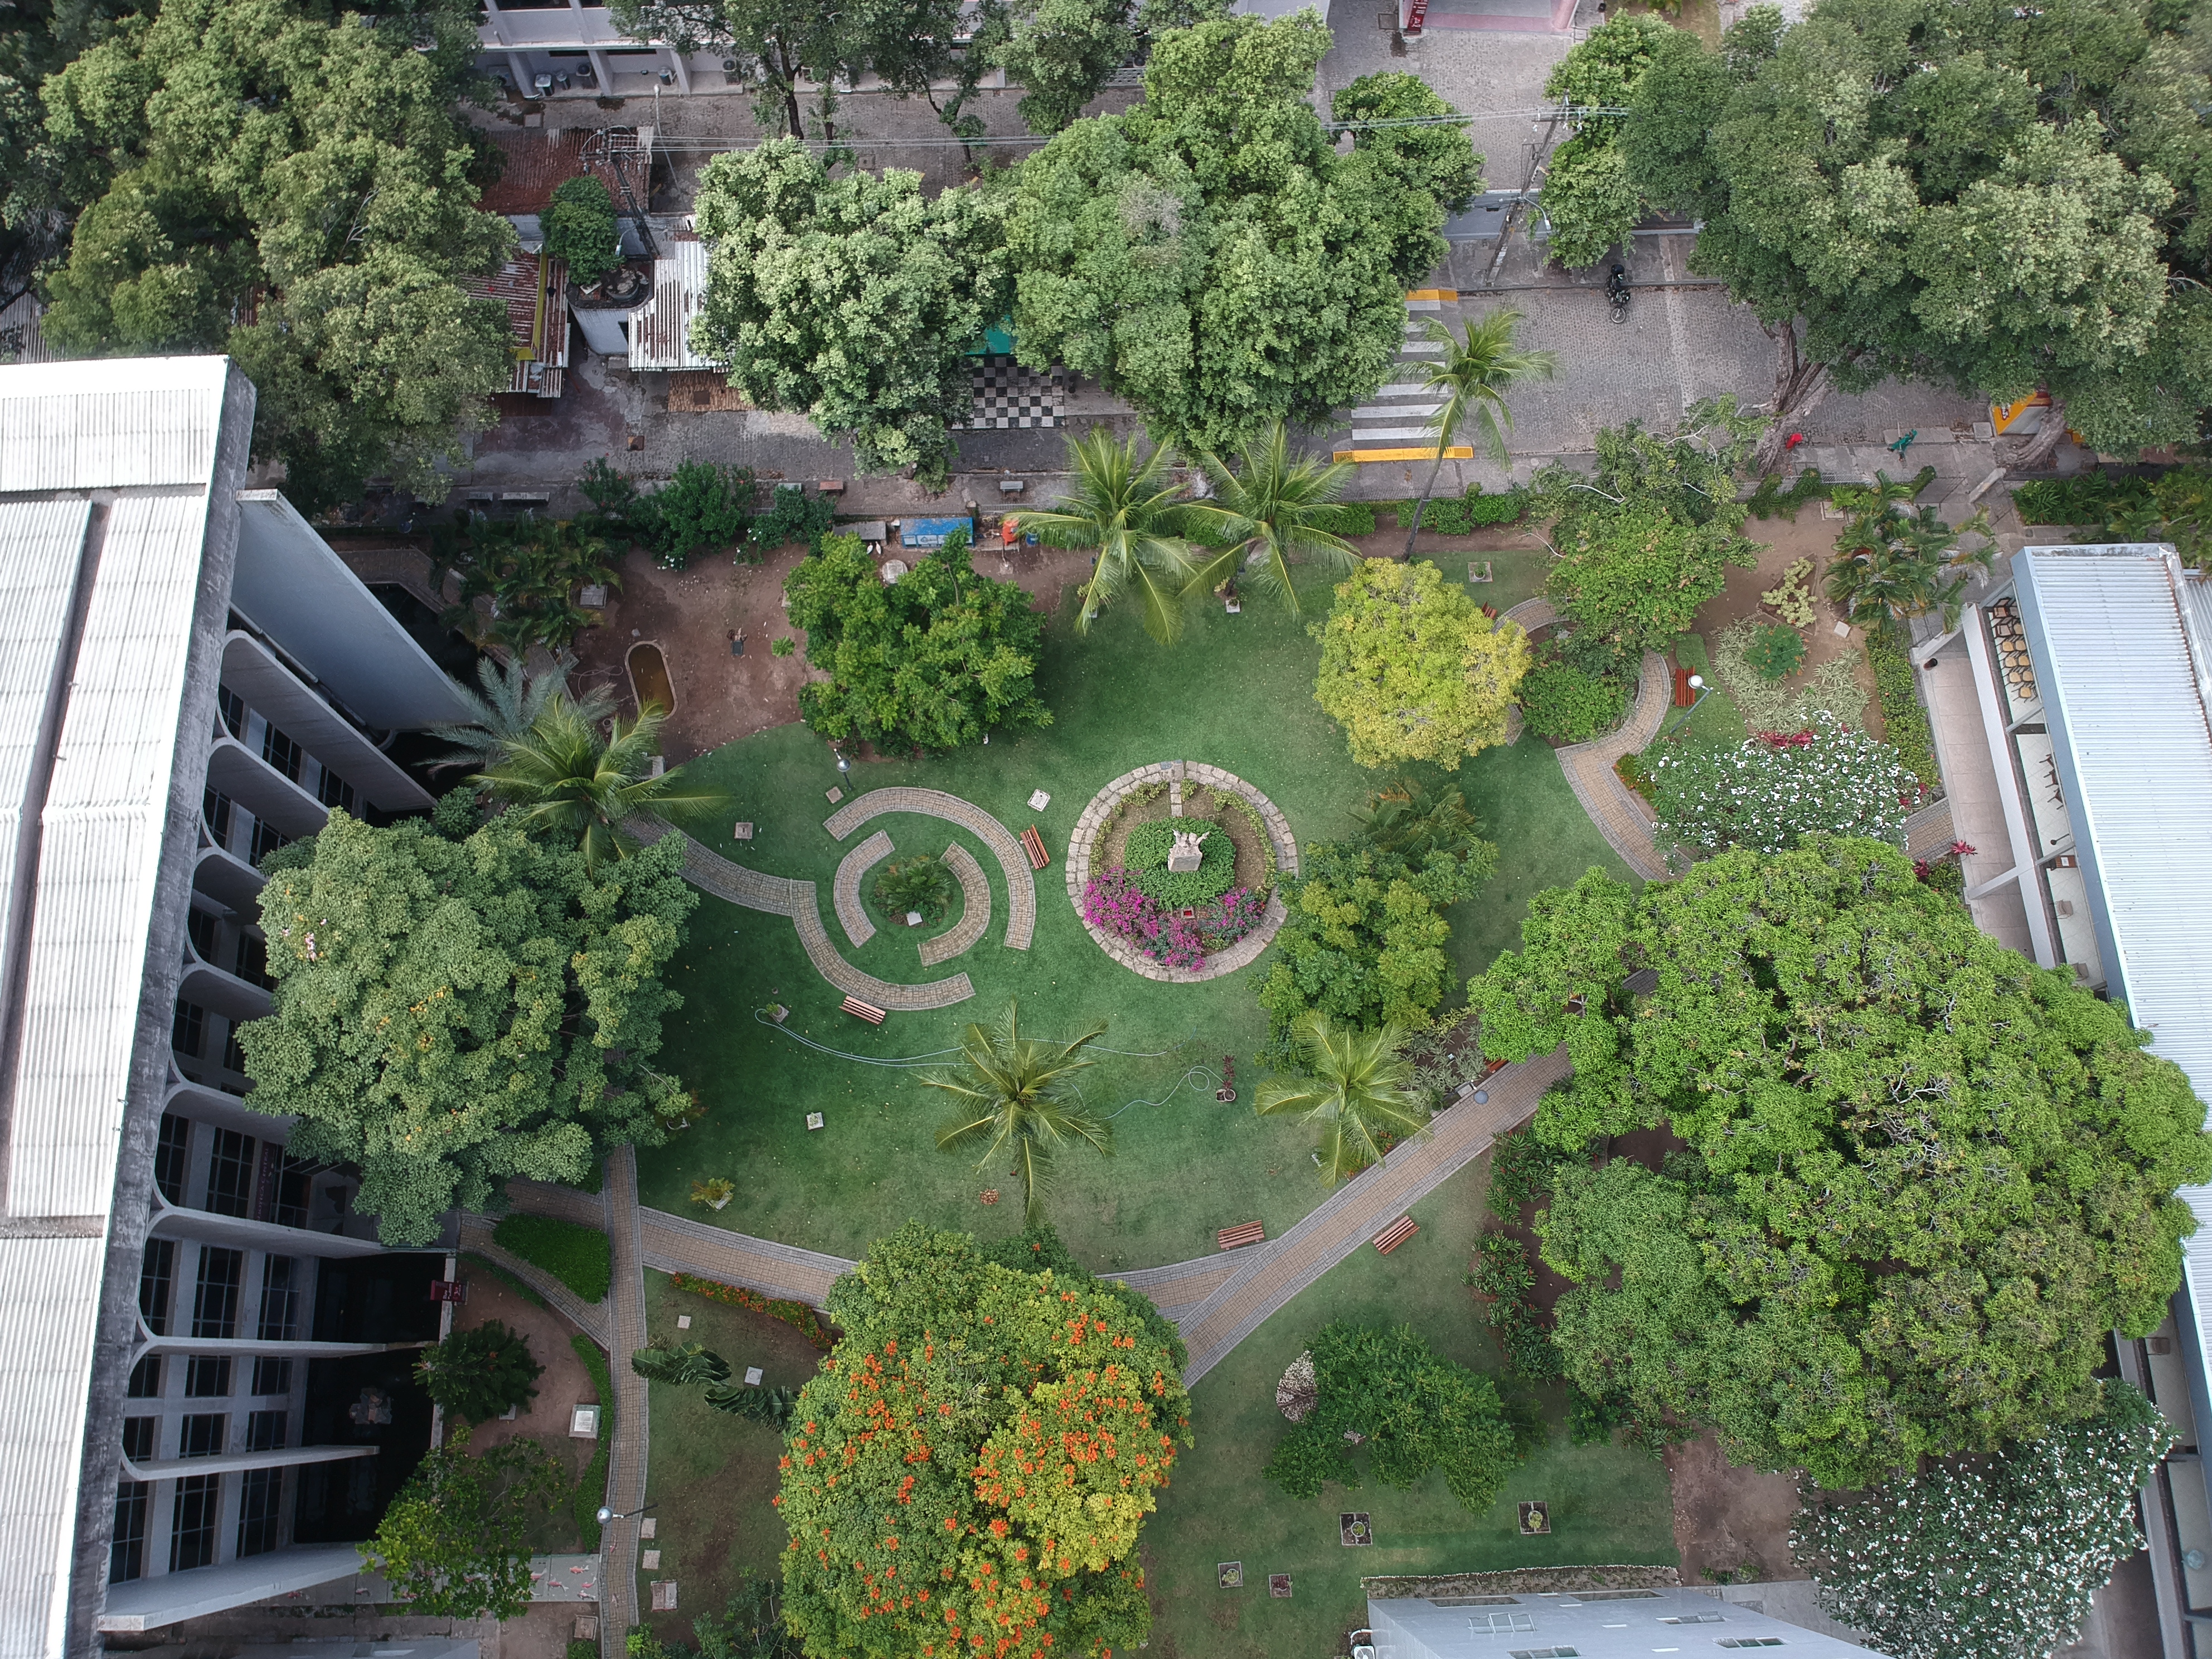 Imagem aérea do jardim da Unicap